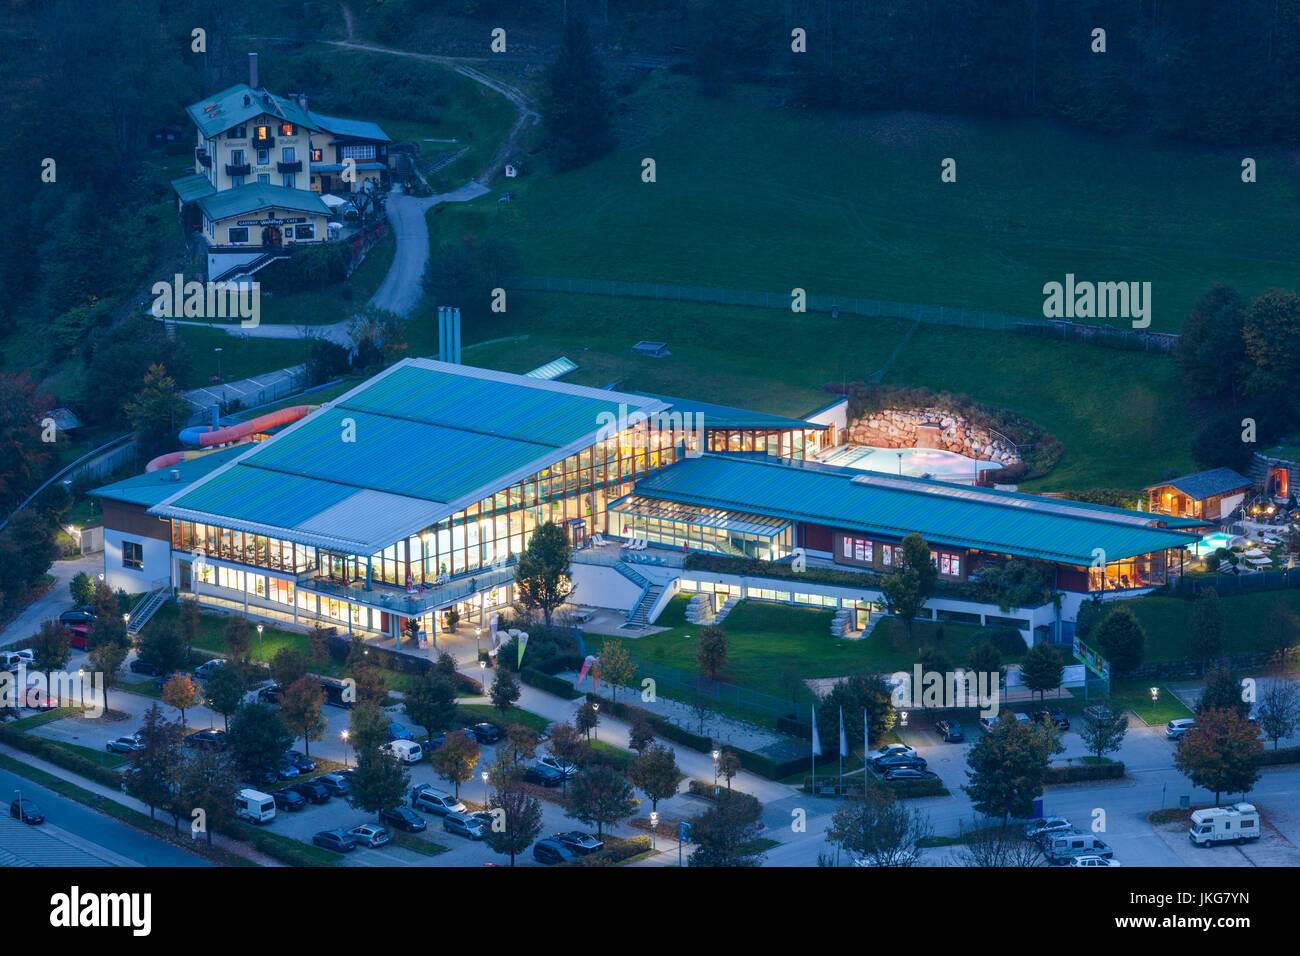 Germany, Bavaria, Berchtesgaden, augmentation de la vue sur le Watzmann Therme water park, dusk Banque D'Images